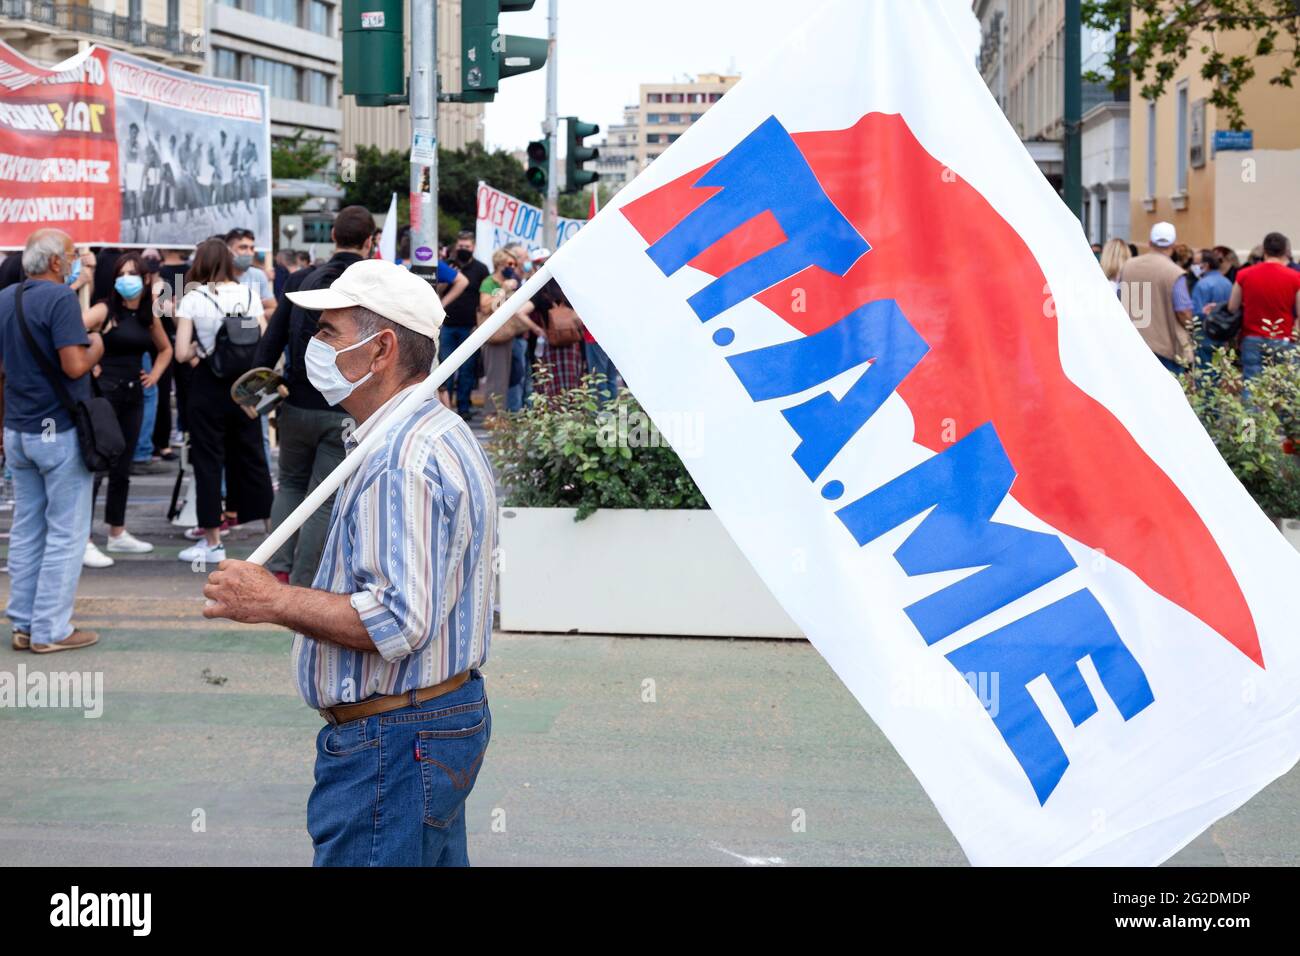 L'anziano protestore che ha detenuto la bandiera di un'Unione comunista del lavoro (Pame) durante lo sciopero generale ad Atene, in Grecia, contro la legge sul lavoro del governo Foto Stock